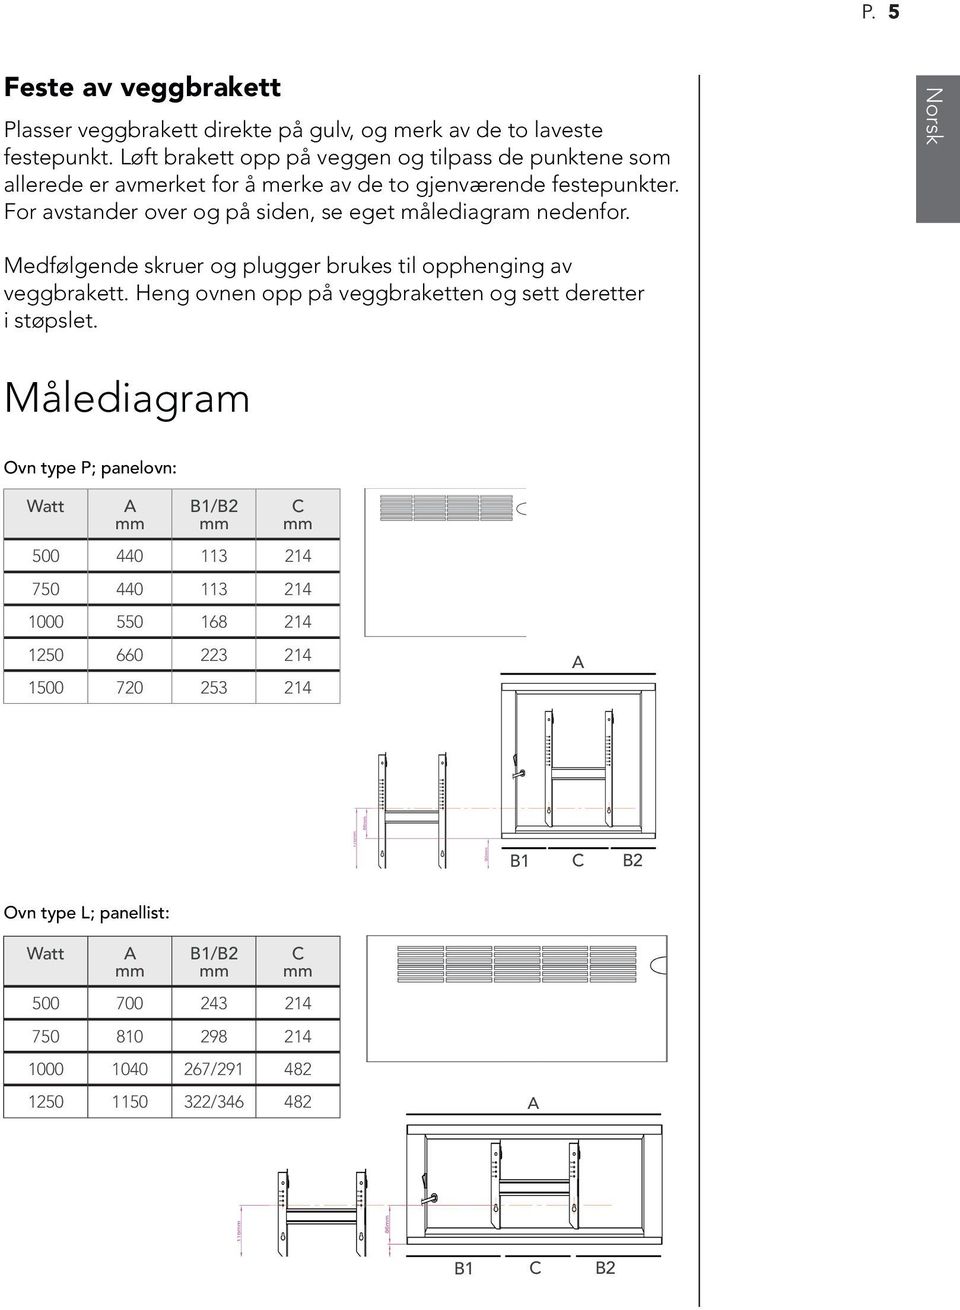 For avstander over og på siden, se eget målediagram nedenfor. Norsk Medfølgende skruer og plugger brukes til opphenging av veggbrakett.